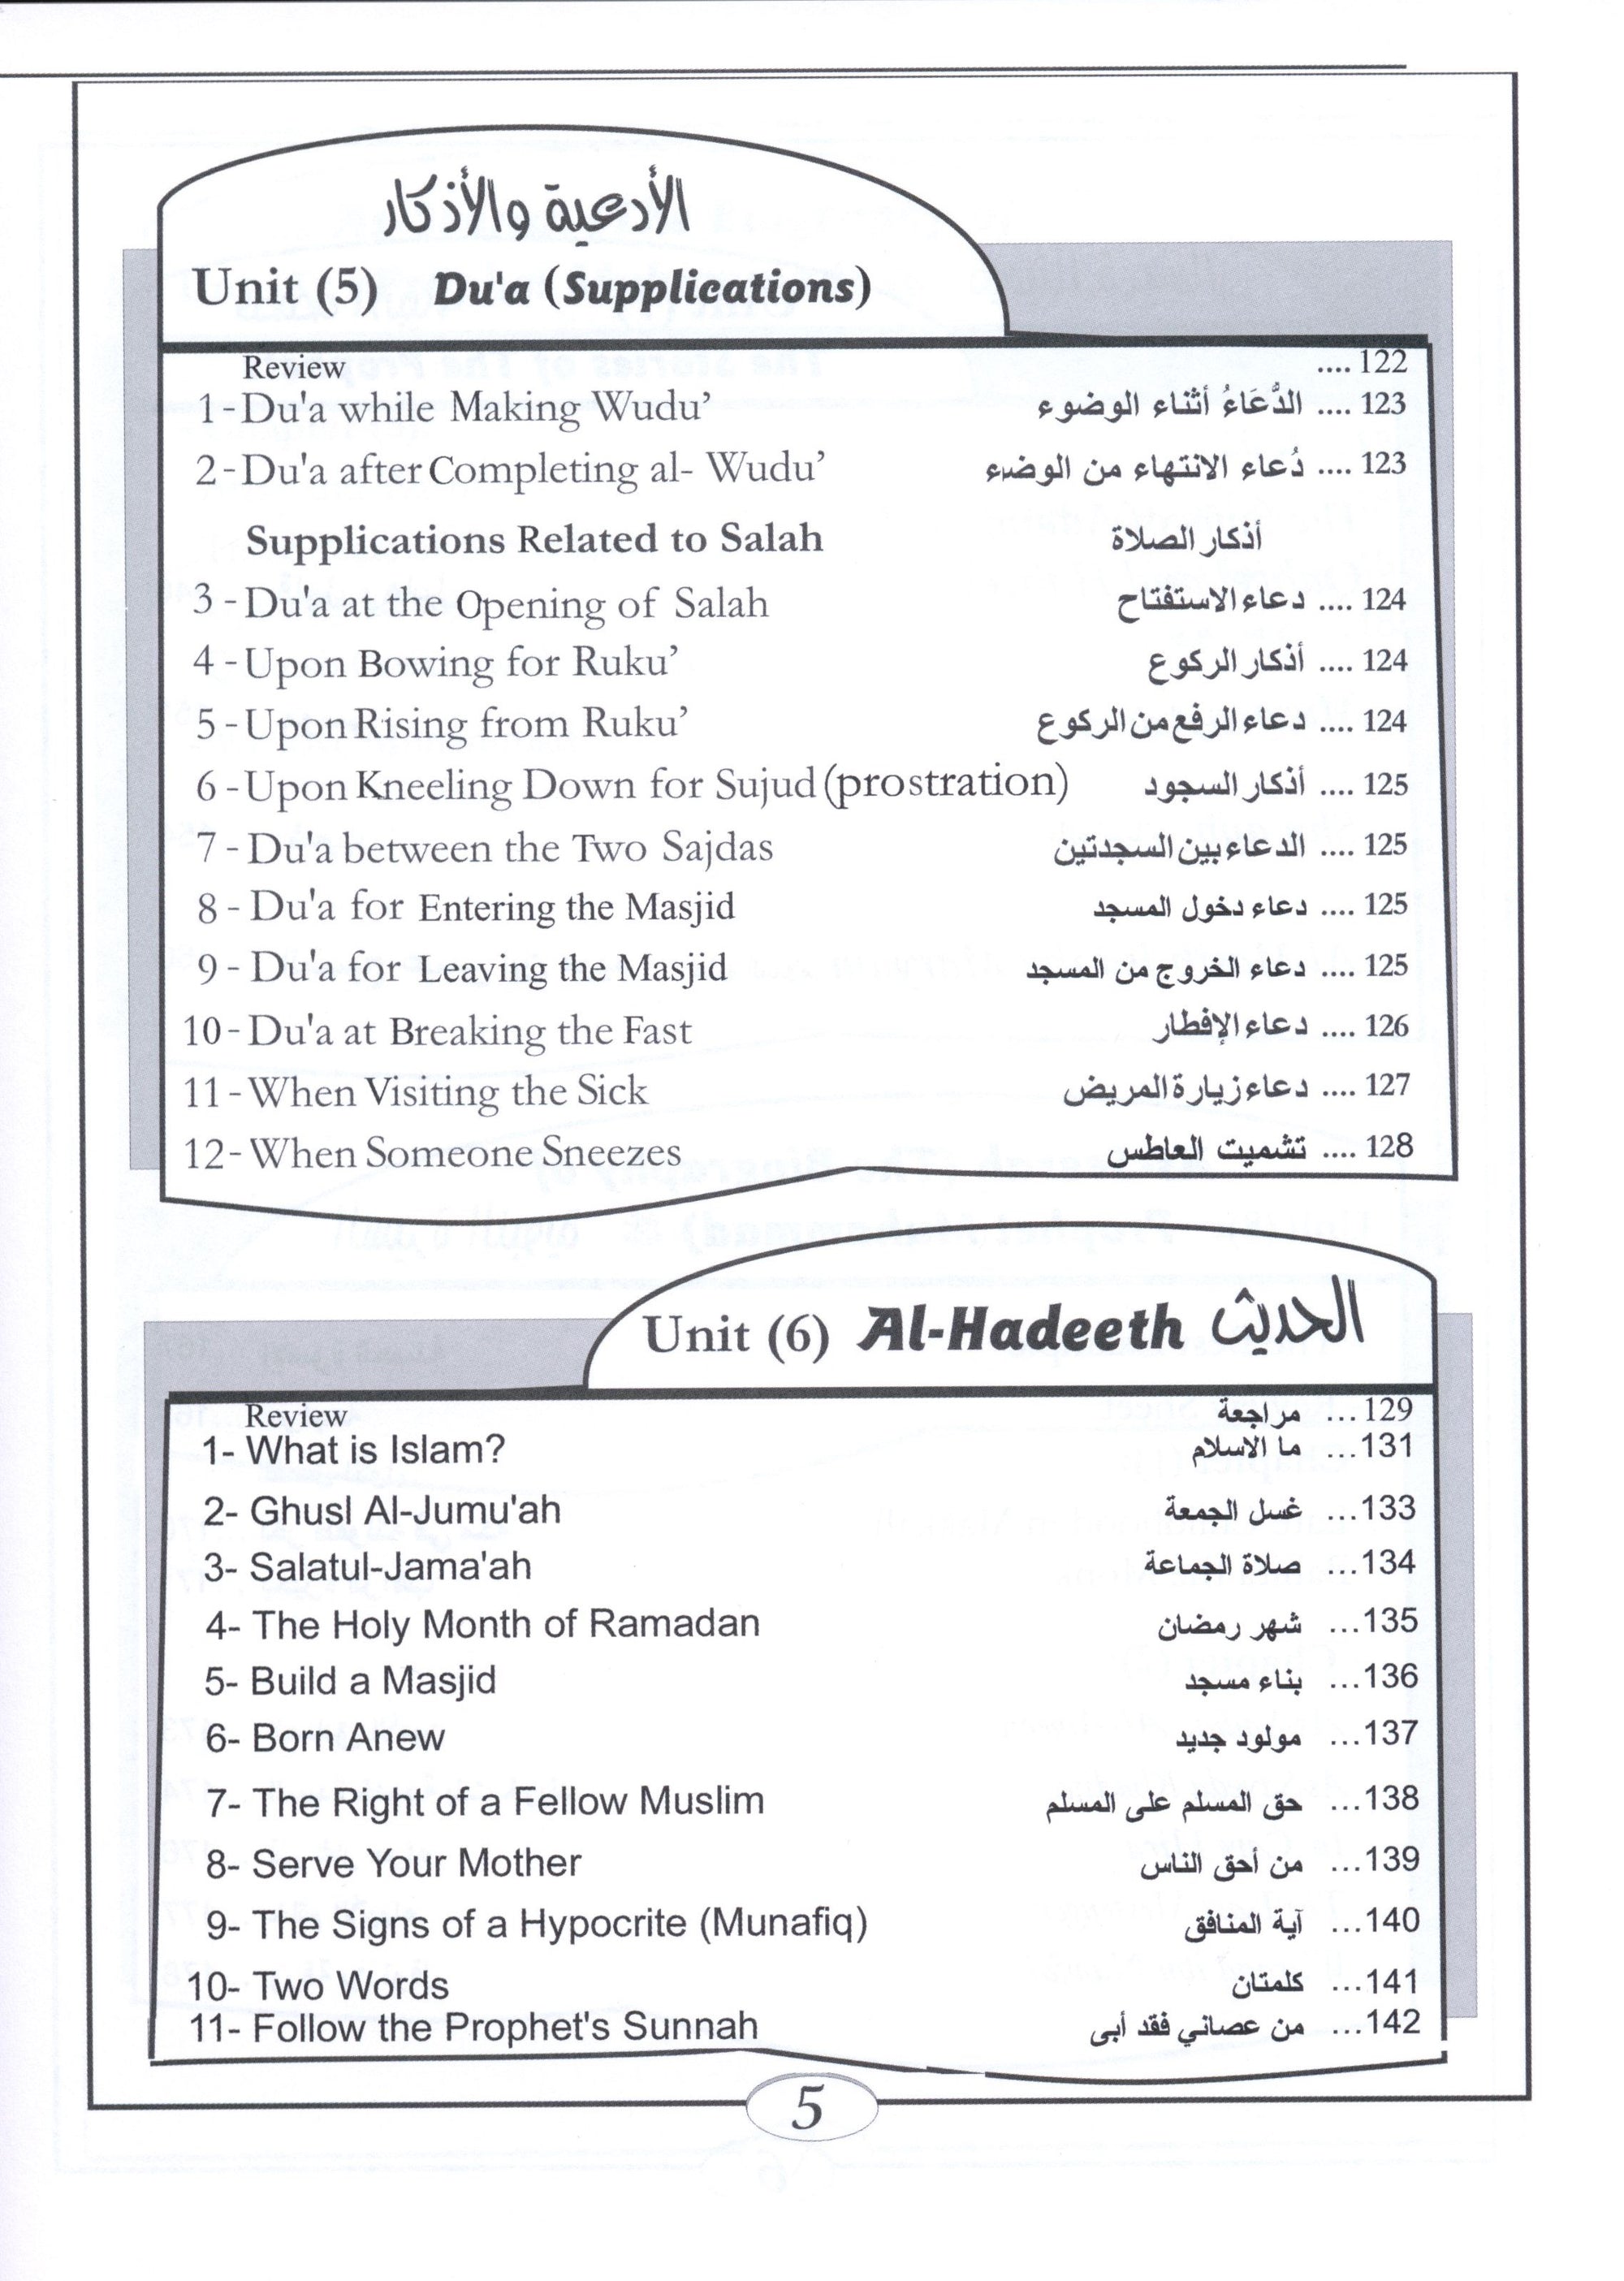 Islamic Education - The Right Path Level 3 التربية الإسلامية